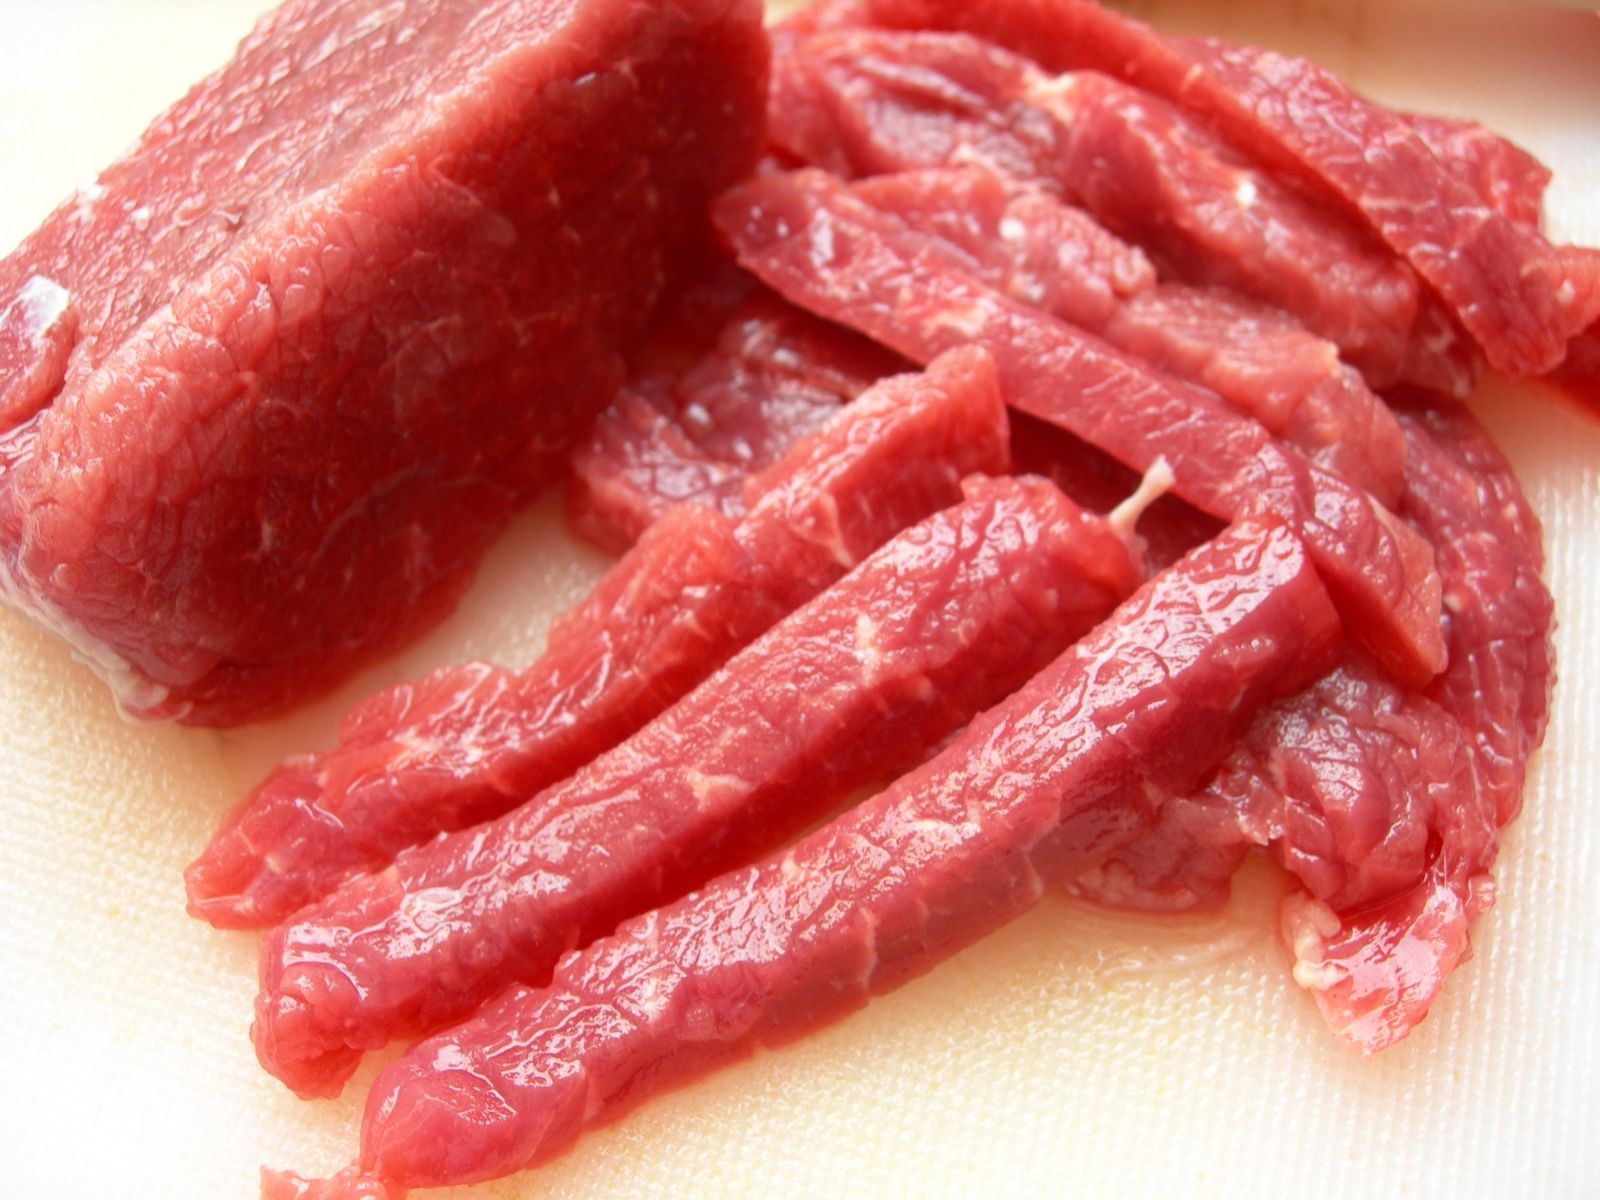 Thịt lợn cũng là loại thực phẩm cần phải nấu chín hoàn toàn